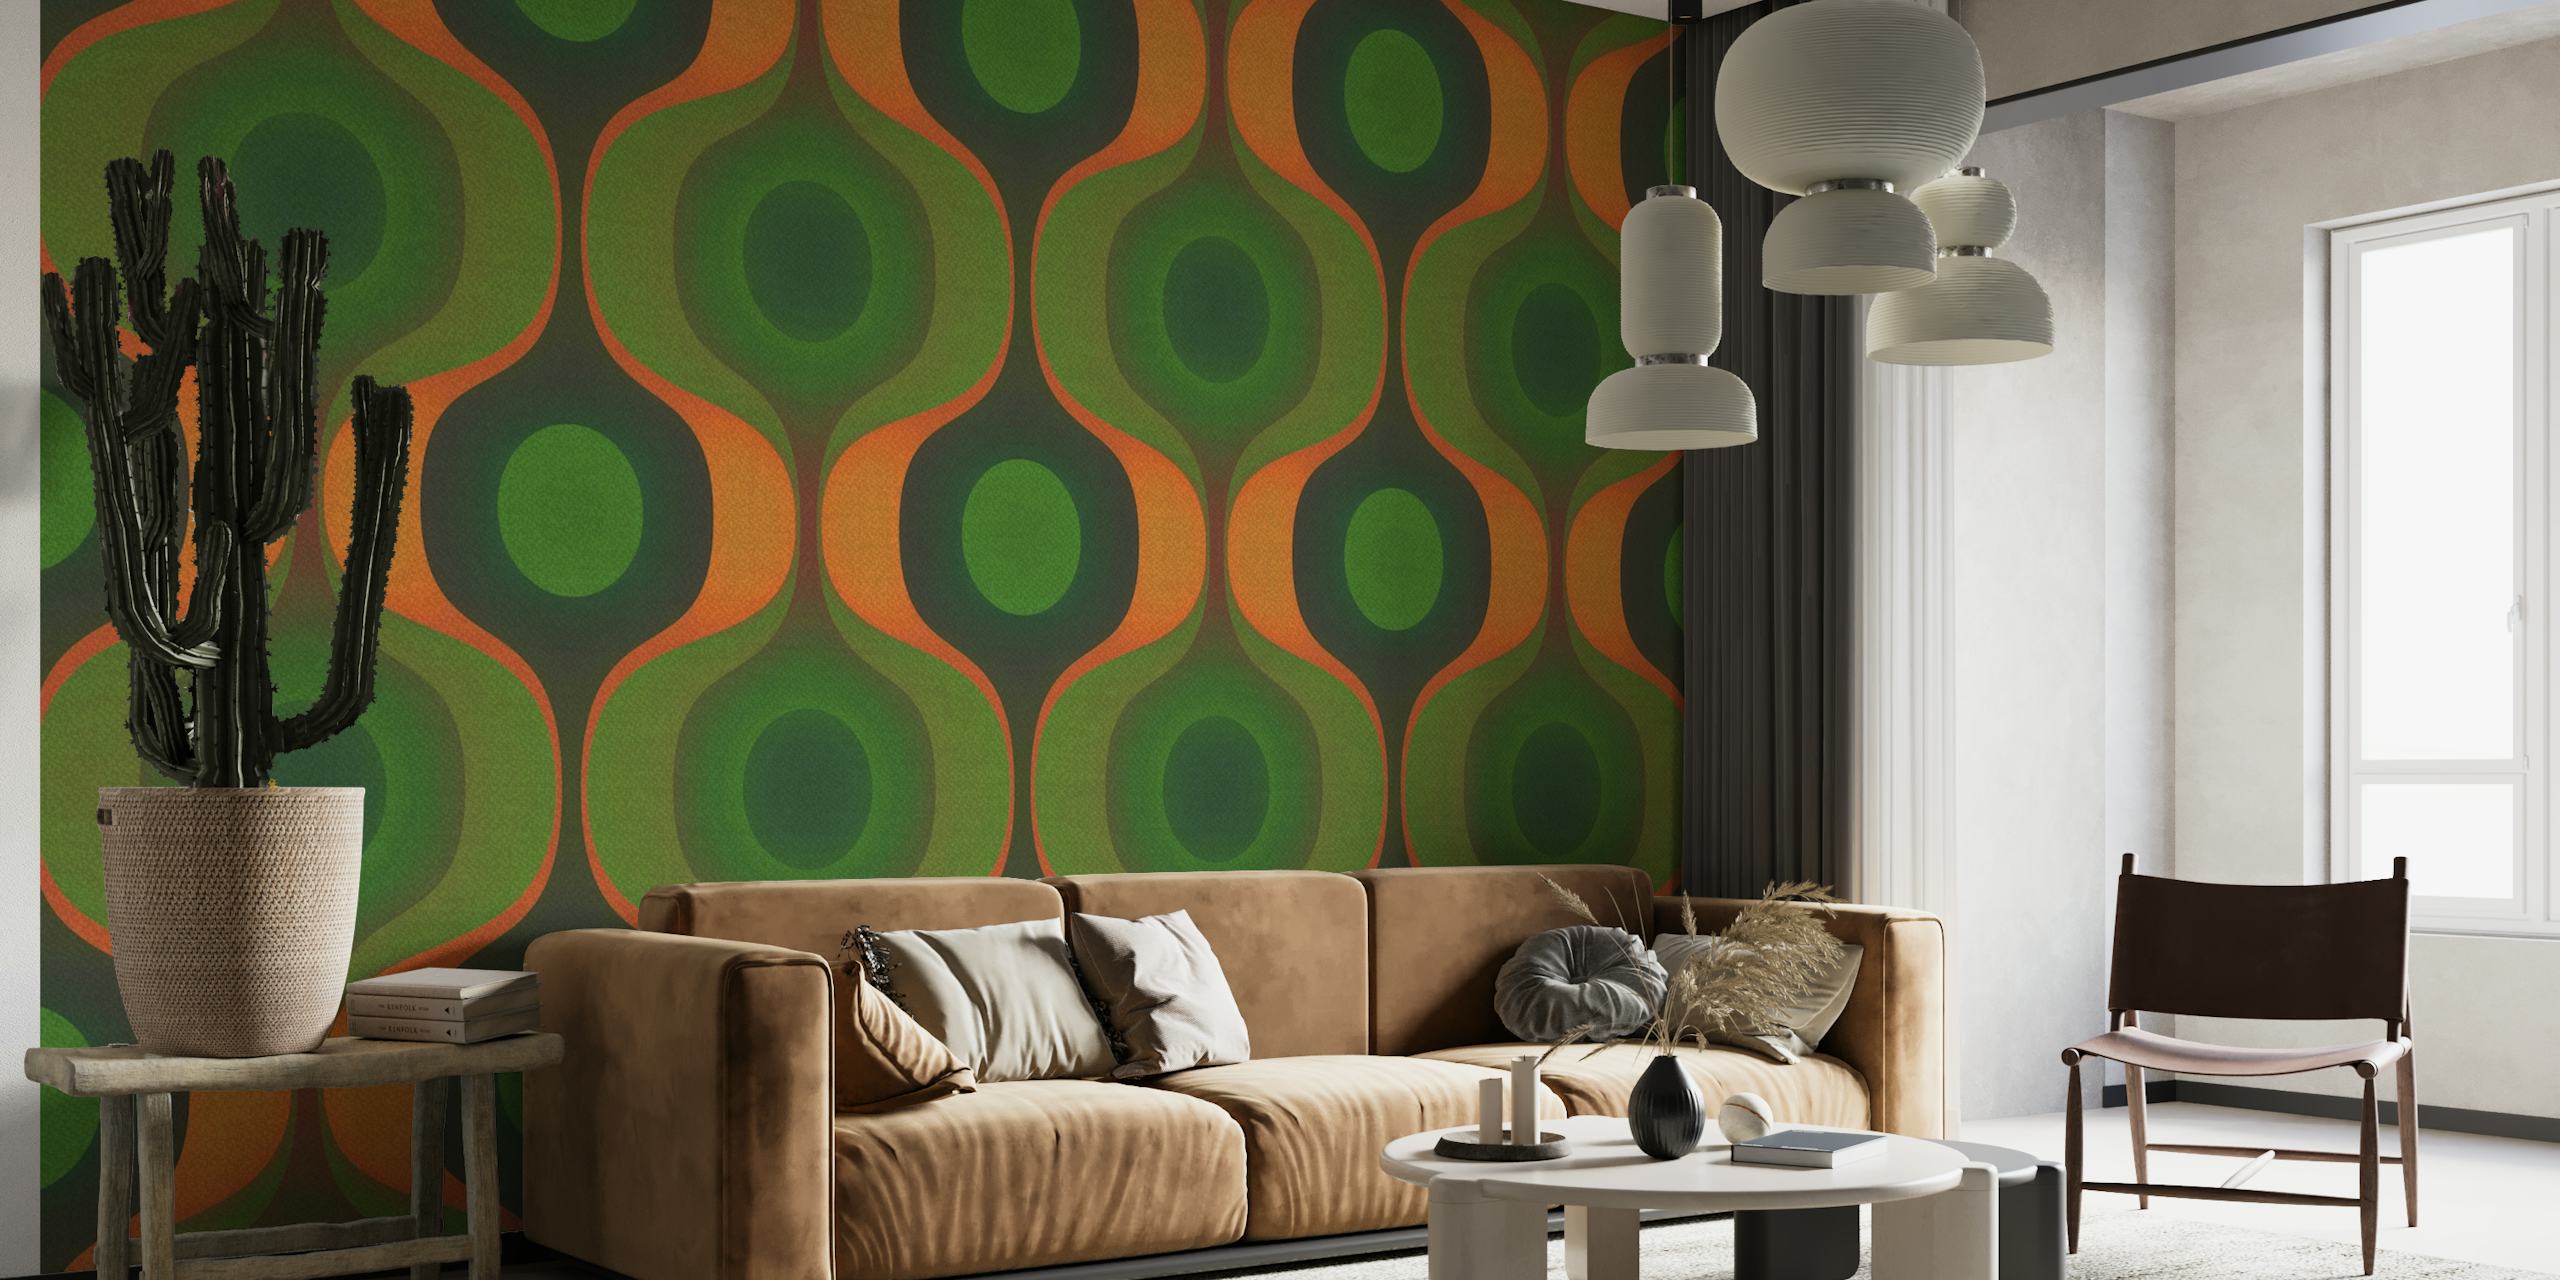 Vihreä ja oranssi geometrinen kuviollinen seinämaalaus, joka muistuttaa 1970-luvulta.